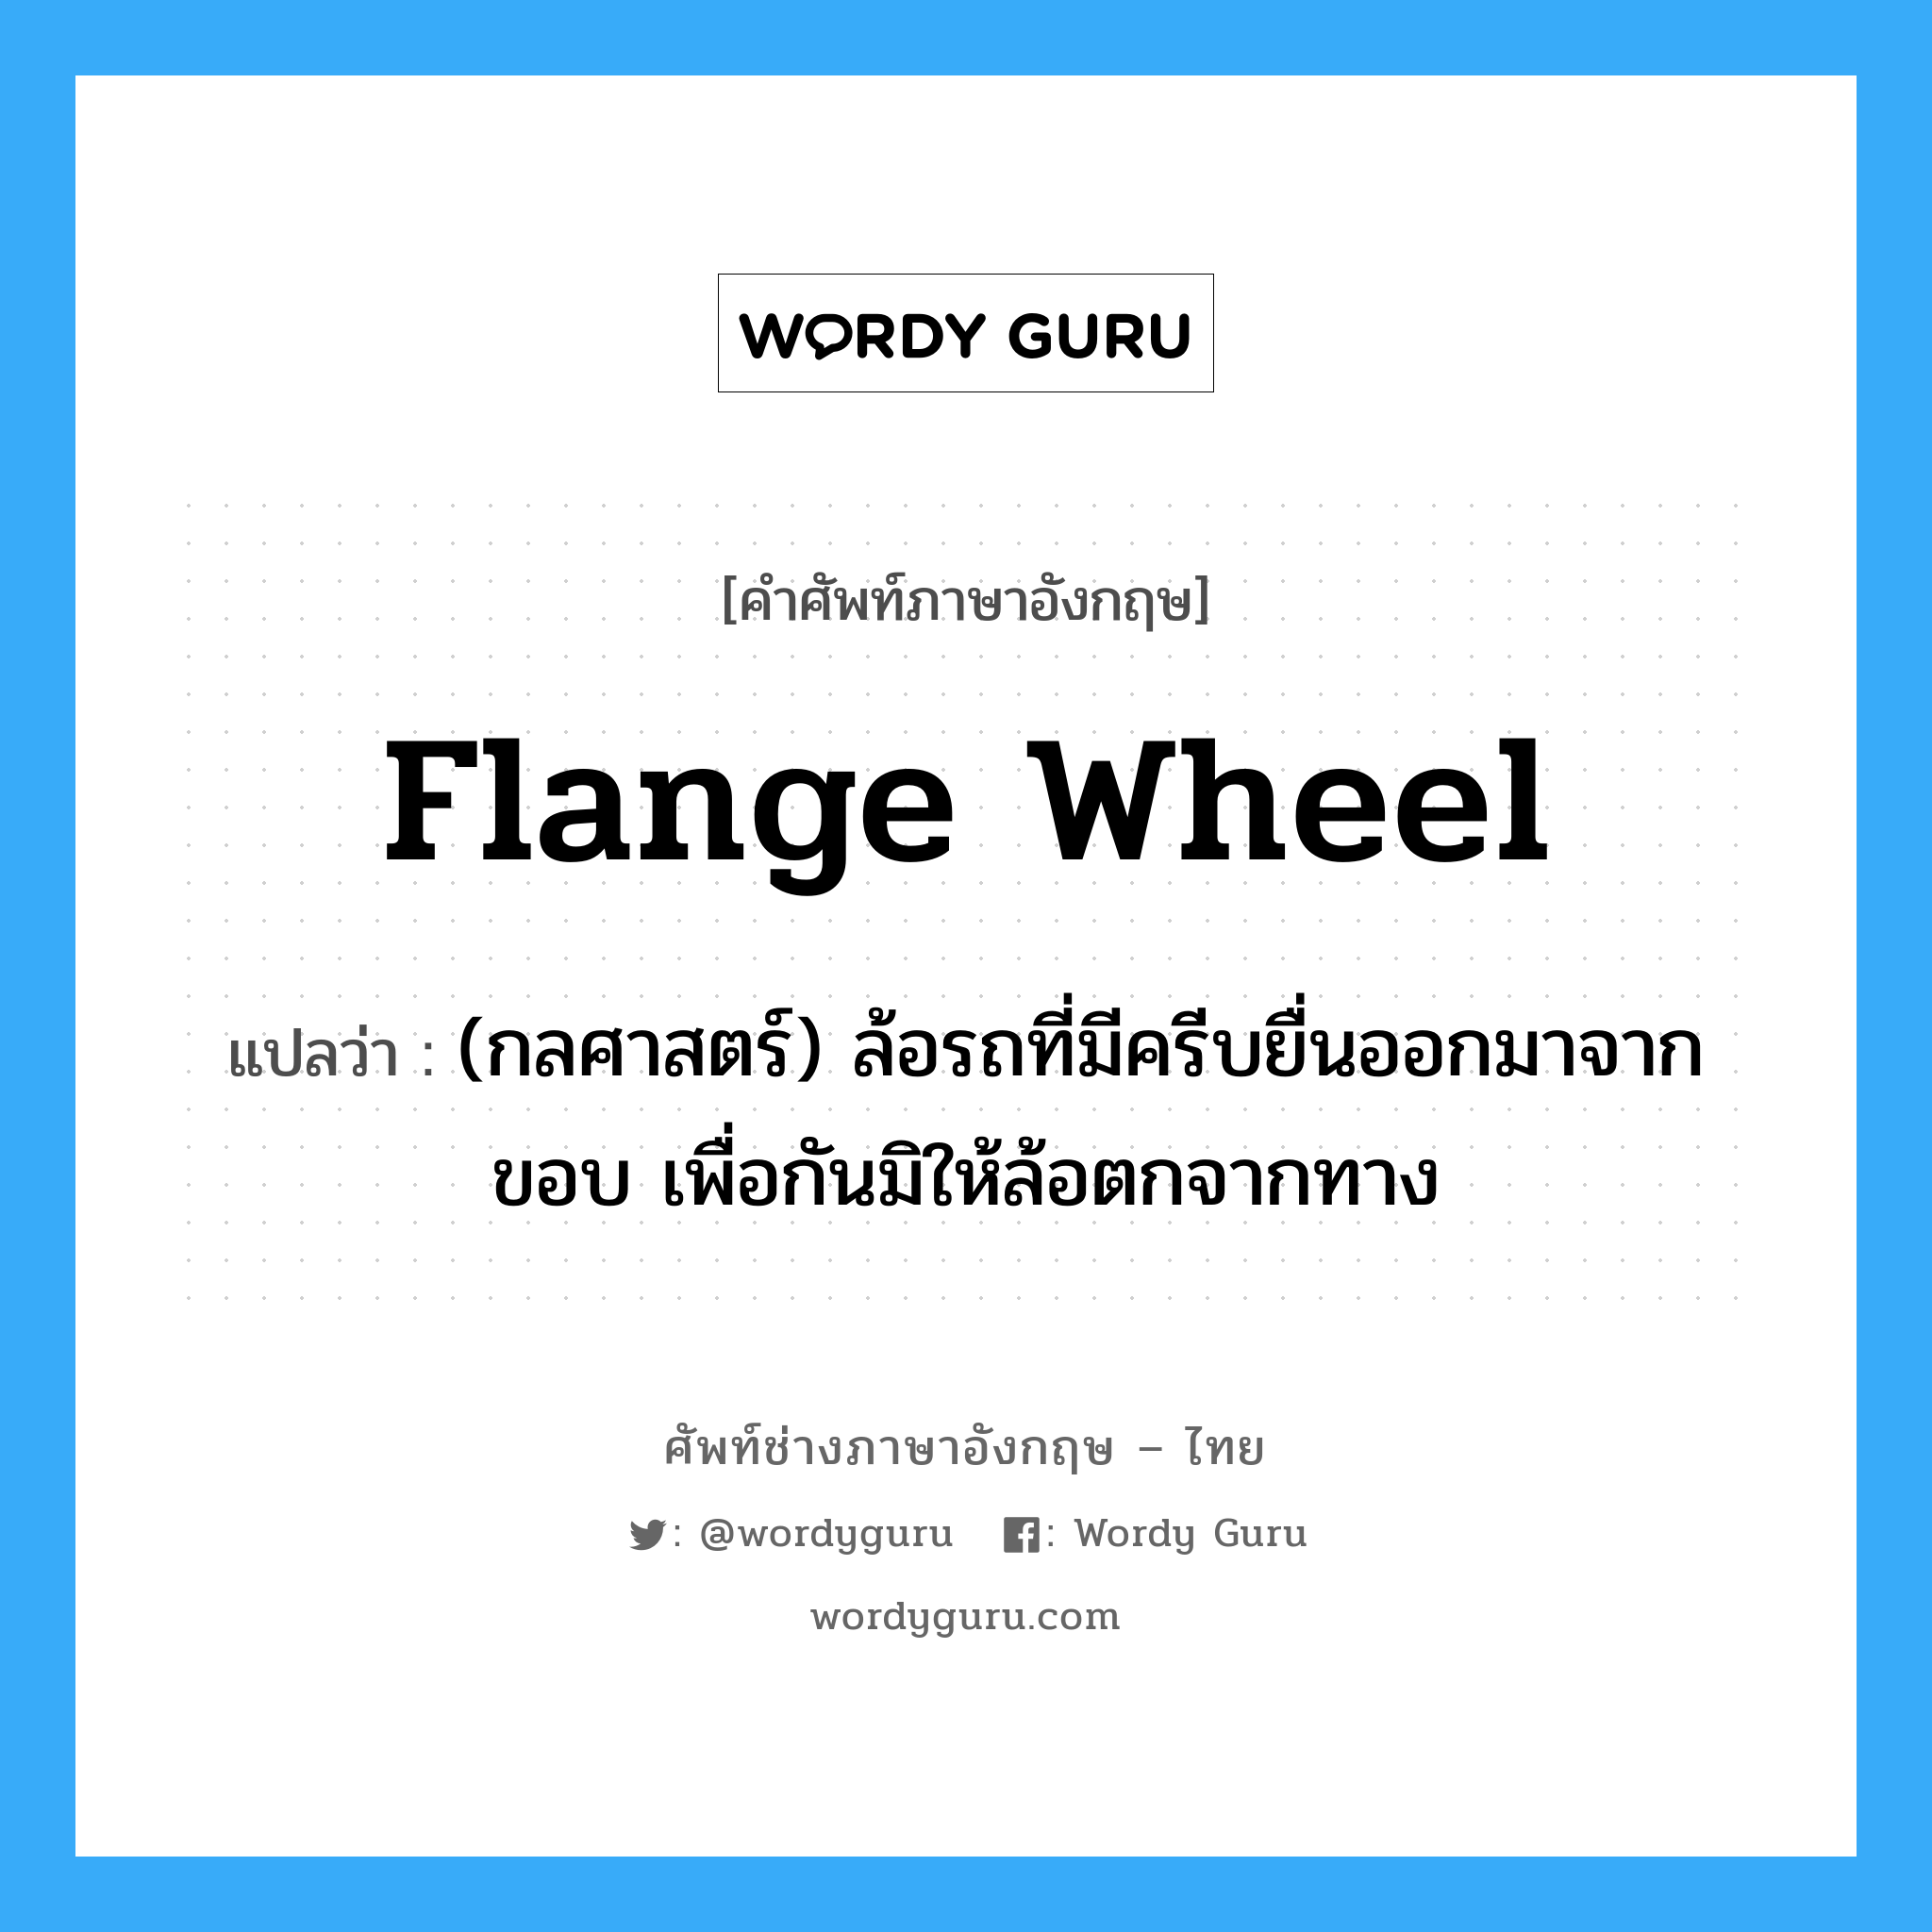 flange wheel แปลว่า?, คำศัพท์ช่างภาษาอังกฤษ - ไทย flange wheel คำศัพท์ภาษาอังกฤษ flange wheel แปลว่า (กลศาสตร์) ล้อรถที่มีครีบยื่นออกมาจากขอบ เพื่อกันมิให้ล้อตกจากทาง